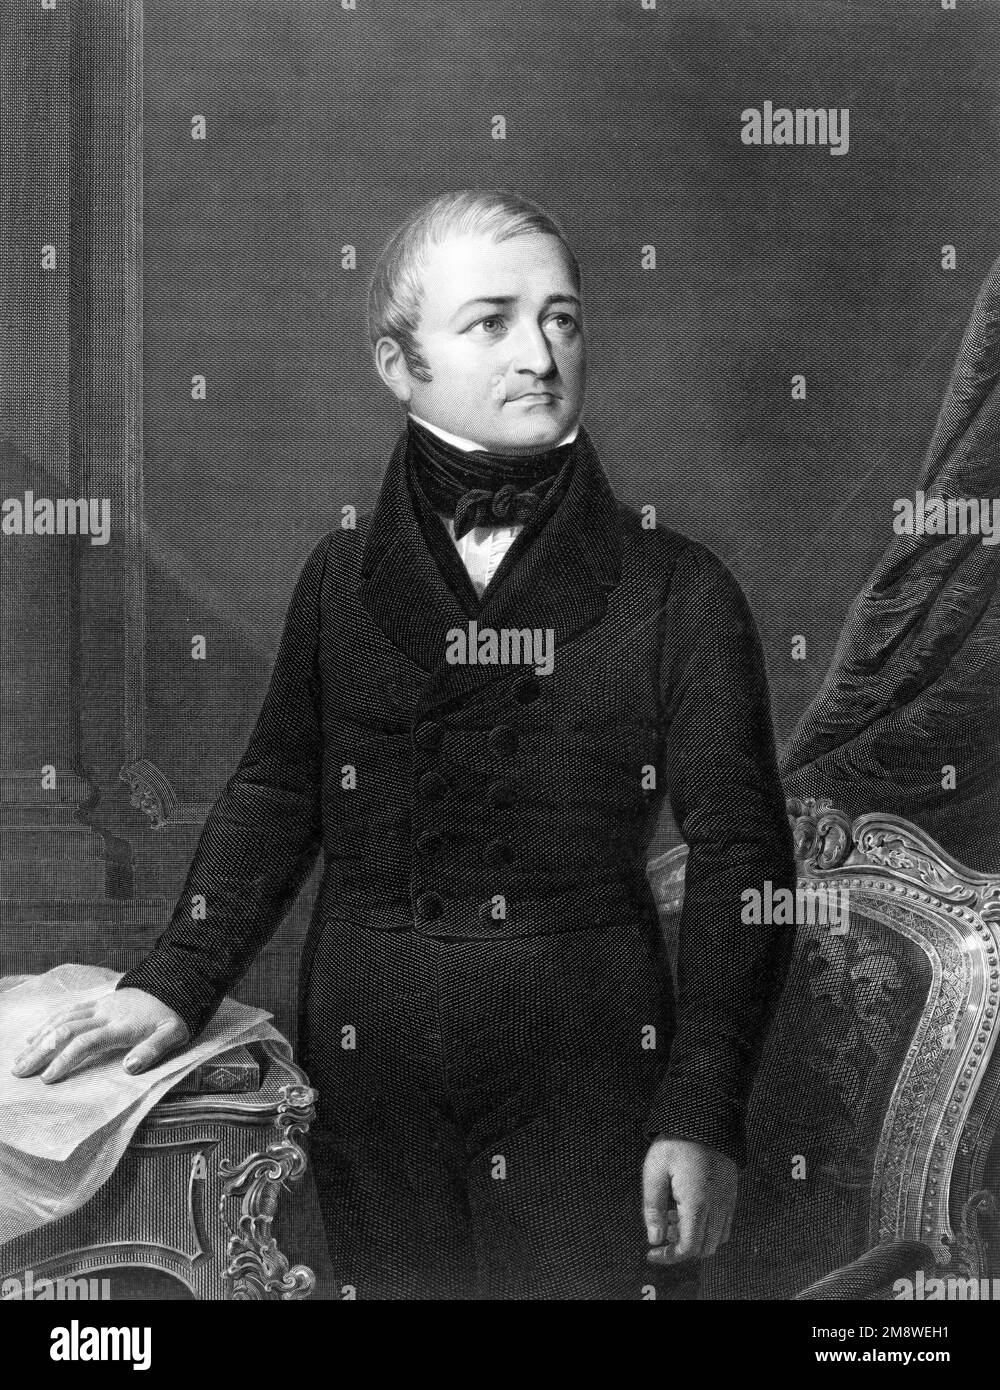 Adolphe Thiers, Marie Joseph Louis Adolphe Thiers (/1797 – 1877) französischer Staatsmann und Historiker. Er war der zweite gewählte Präsident Frankreichs und der erste Präsident der Französischen Dritten Republik. Stockfoto